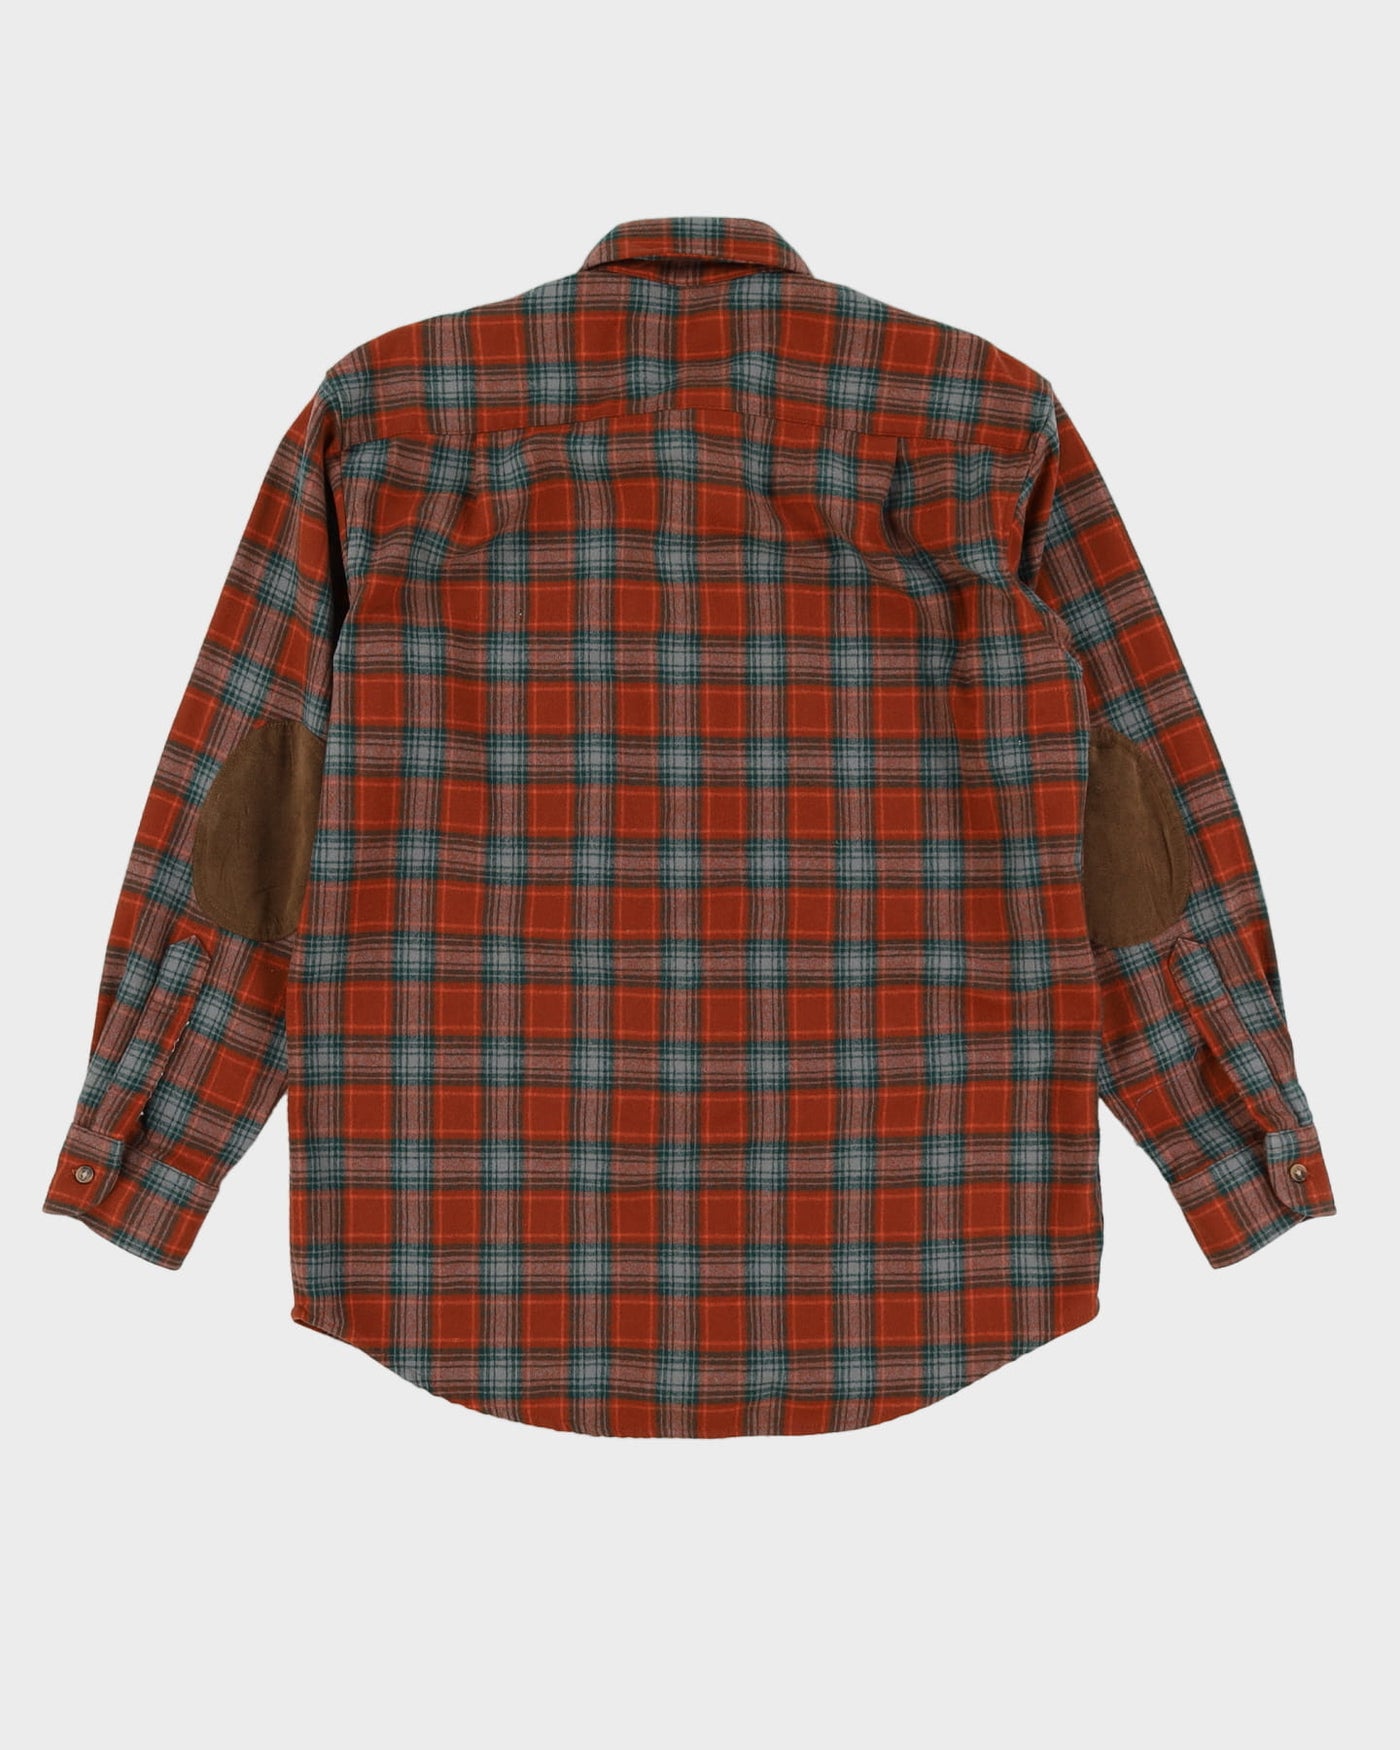 Pendleton Orange Checked Wool Shirt - L